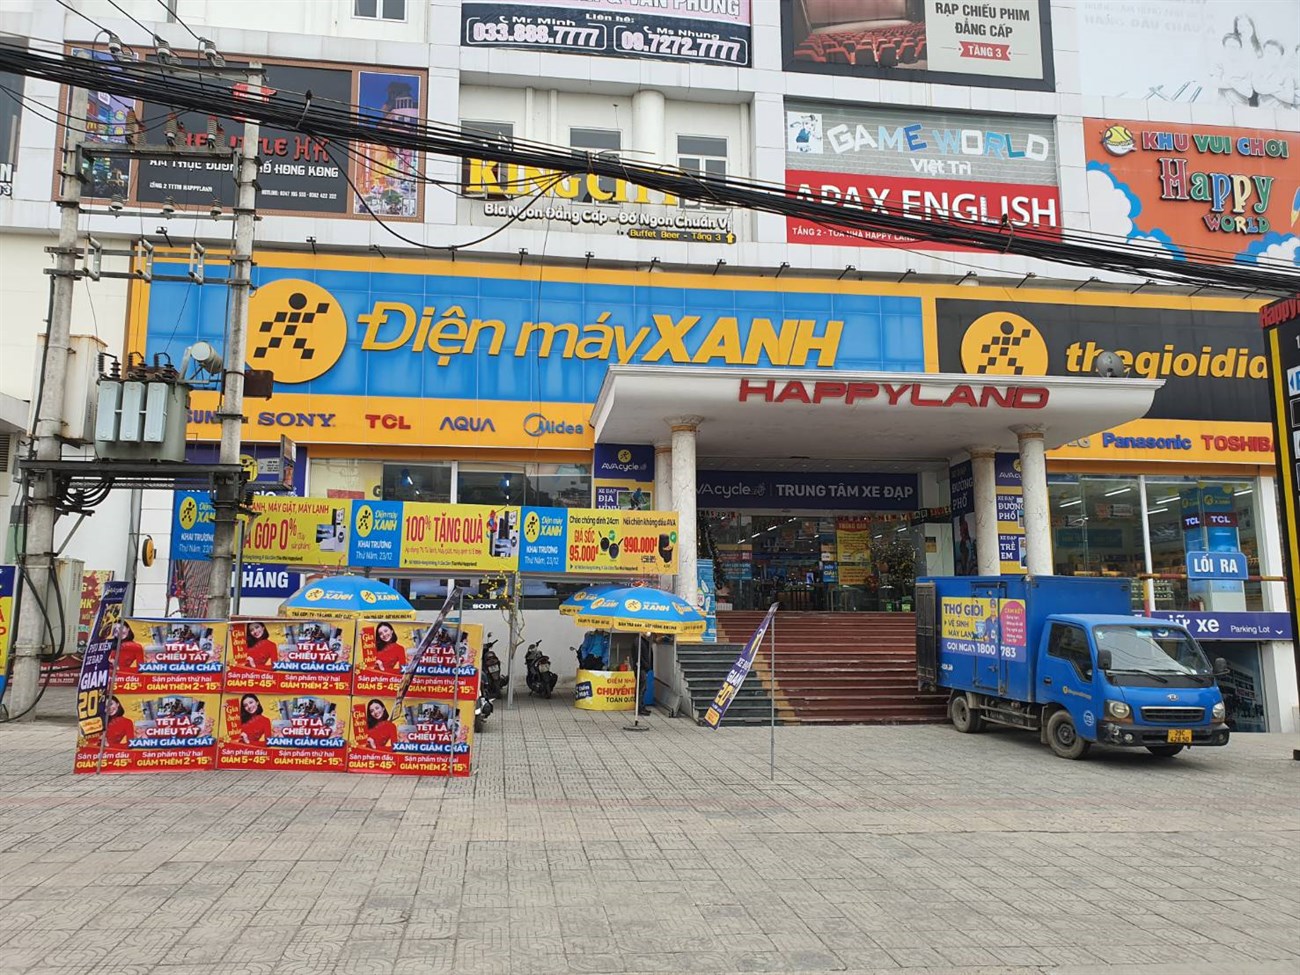 Điện máy XANH Hùng Vương Việt Trì là trung tâm mua sắm đáng tin cậy và uy tín với nhiều sản phẩm chất lượng và giá cả hợp lý. Tại đây, bạn sẽ được tư vấn tận tình và trải nghiệm dịch vụ mua sắm thỏa đáng. Đừng bỏ lỡ cơ hội sở hữu những sản phẩm tốt nhất cho gia đình của bạn.